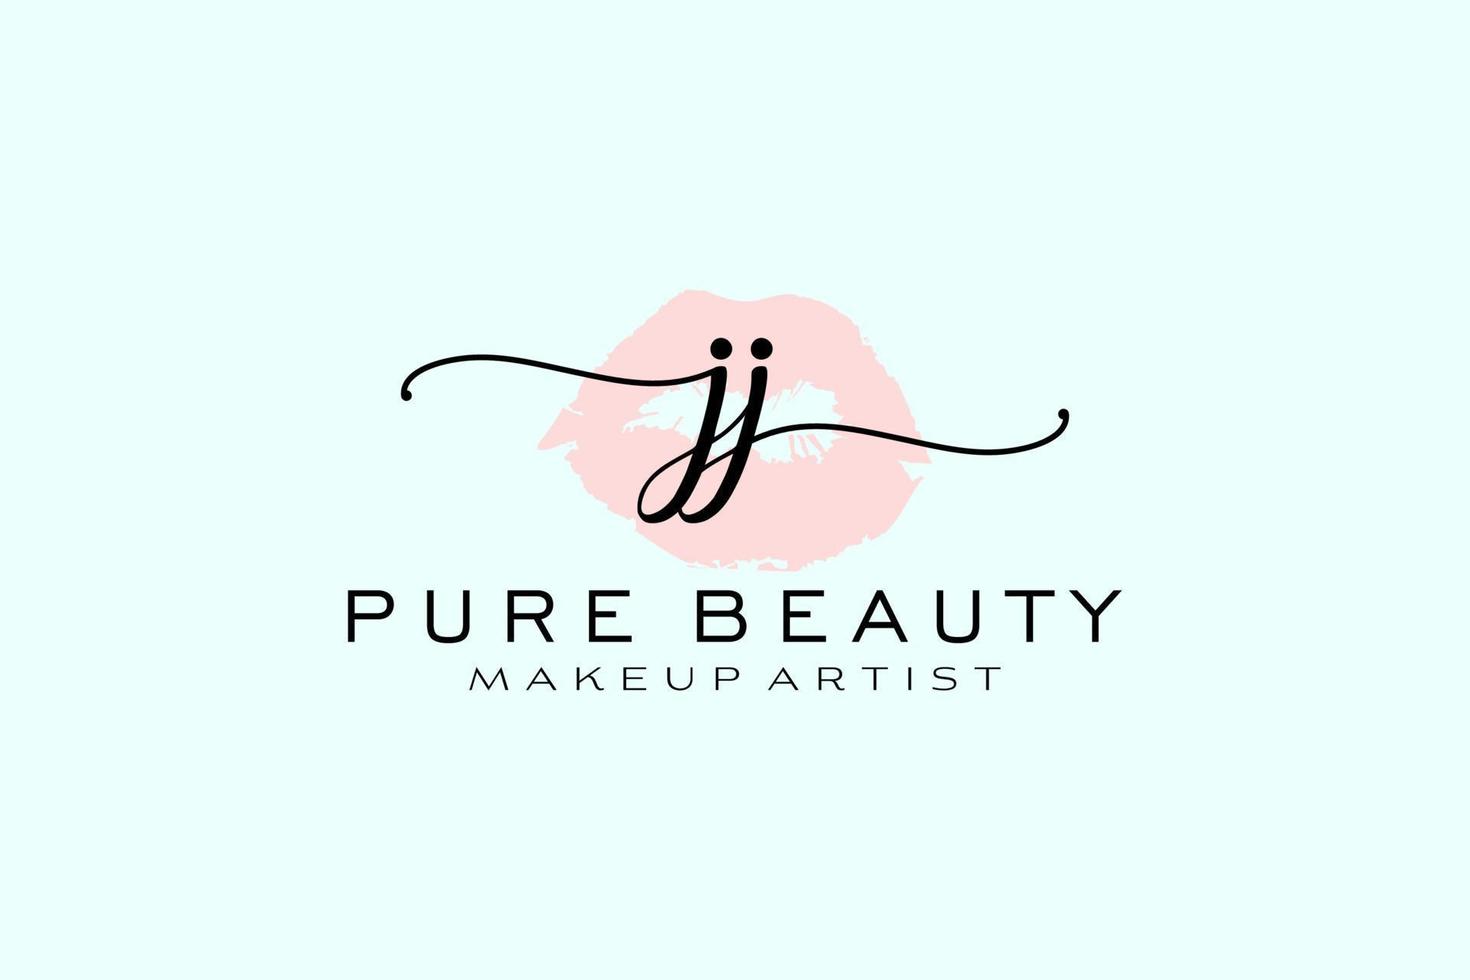 création initiale de logo préfabriqué pour les lèvres aquarelles jj, logo pour la marque d'entreprise de maquilleur, création de logo de boutique de beauté blush, logo de calligraphie avec modèle créatif. vecteur